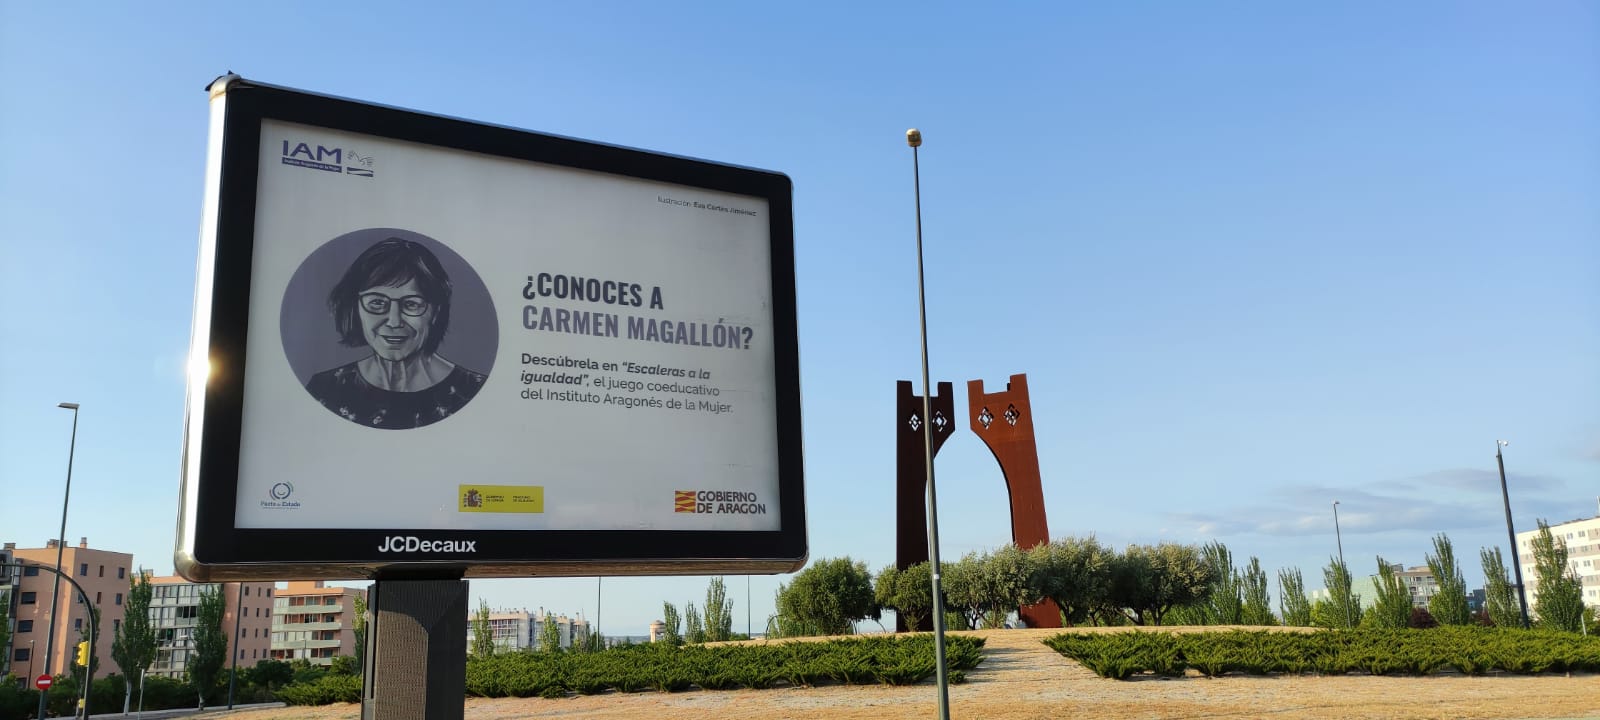 Mupi en Zaragoza de la campaña "Escaleras a la Igualdad" interpelando: ¿Conoces a Carmen Magallón?